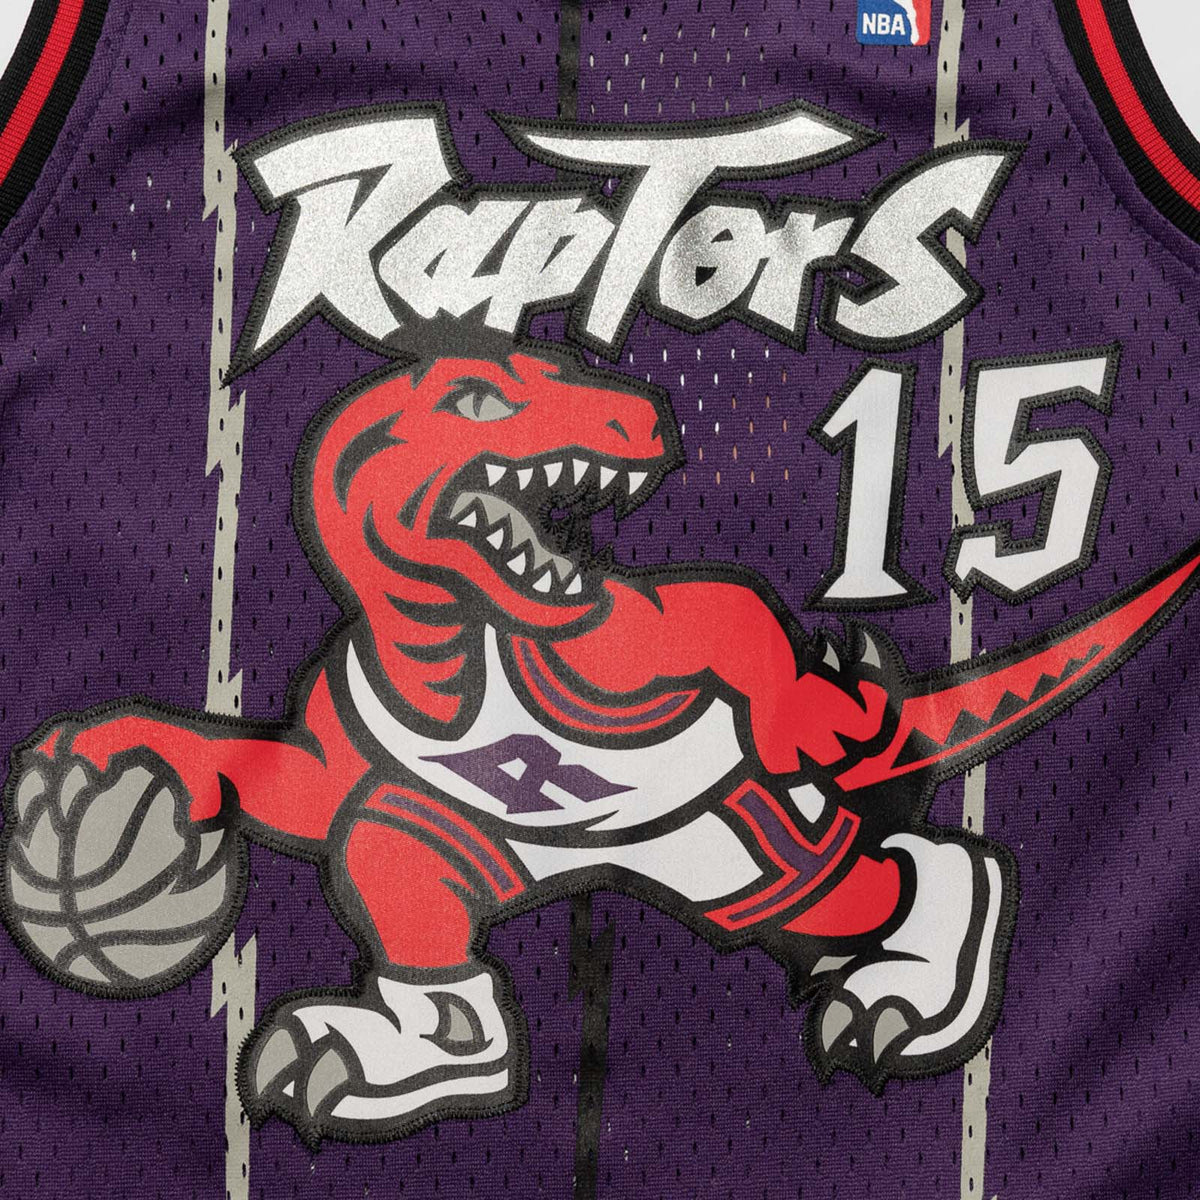 Women's Vince Carter 98 Toronto Raptors Jersey